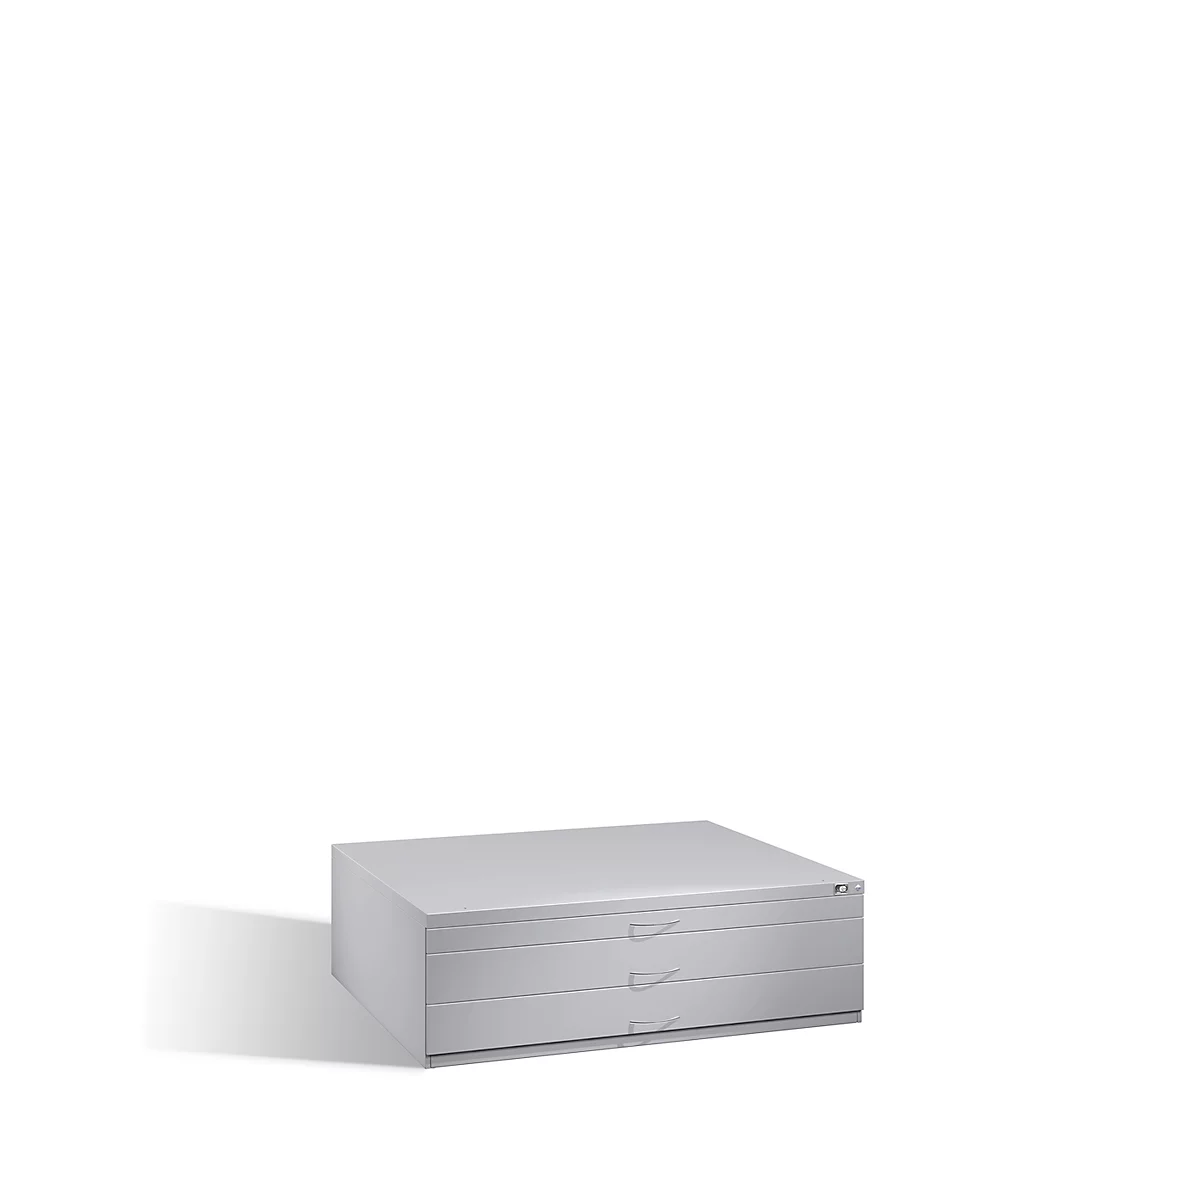 Planschrank aus Stahl, für Formate bis DIN A0, 3 Schubladen